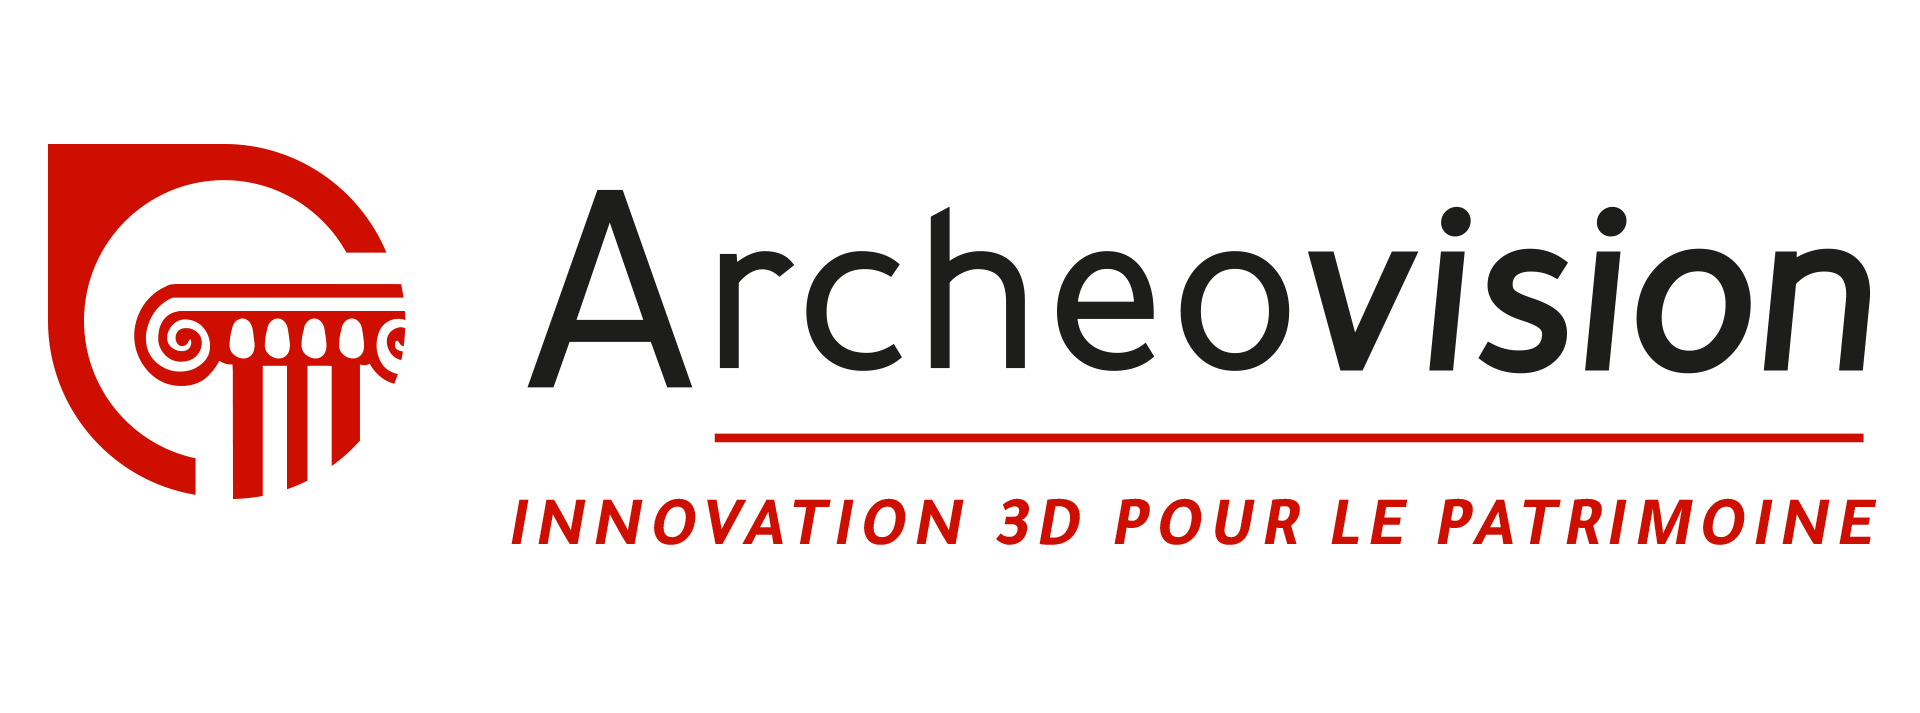 Archeovision services 2020 3D patrimoine